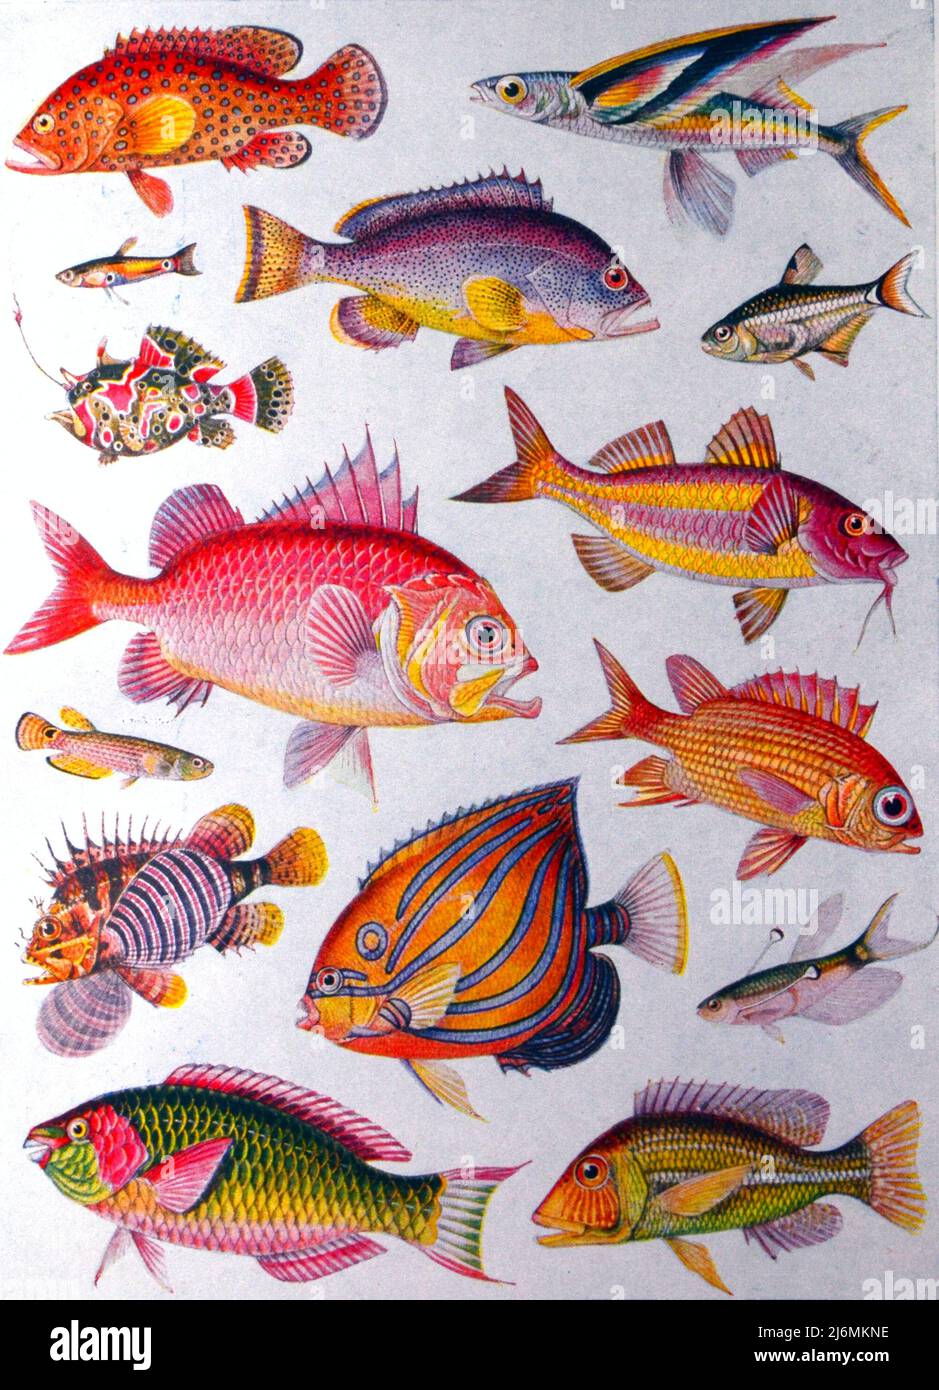 Ilustración o dibujo o imágenes de peces o peces o de la vida marina Foto de stock